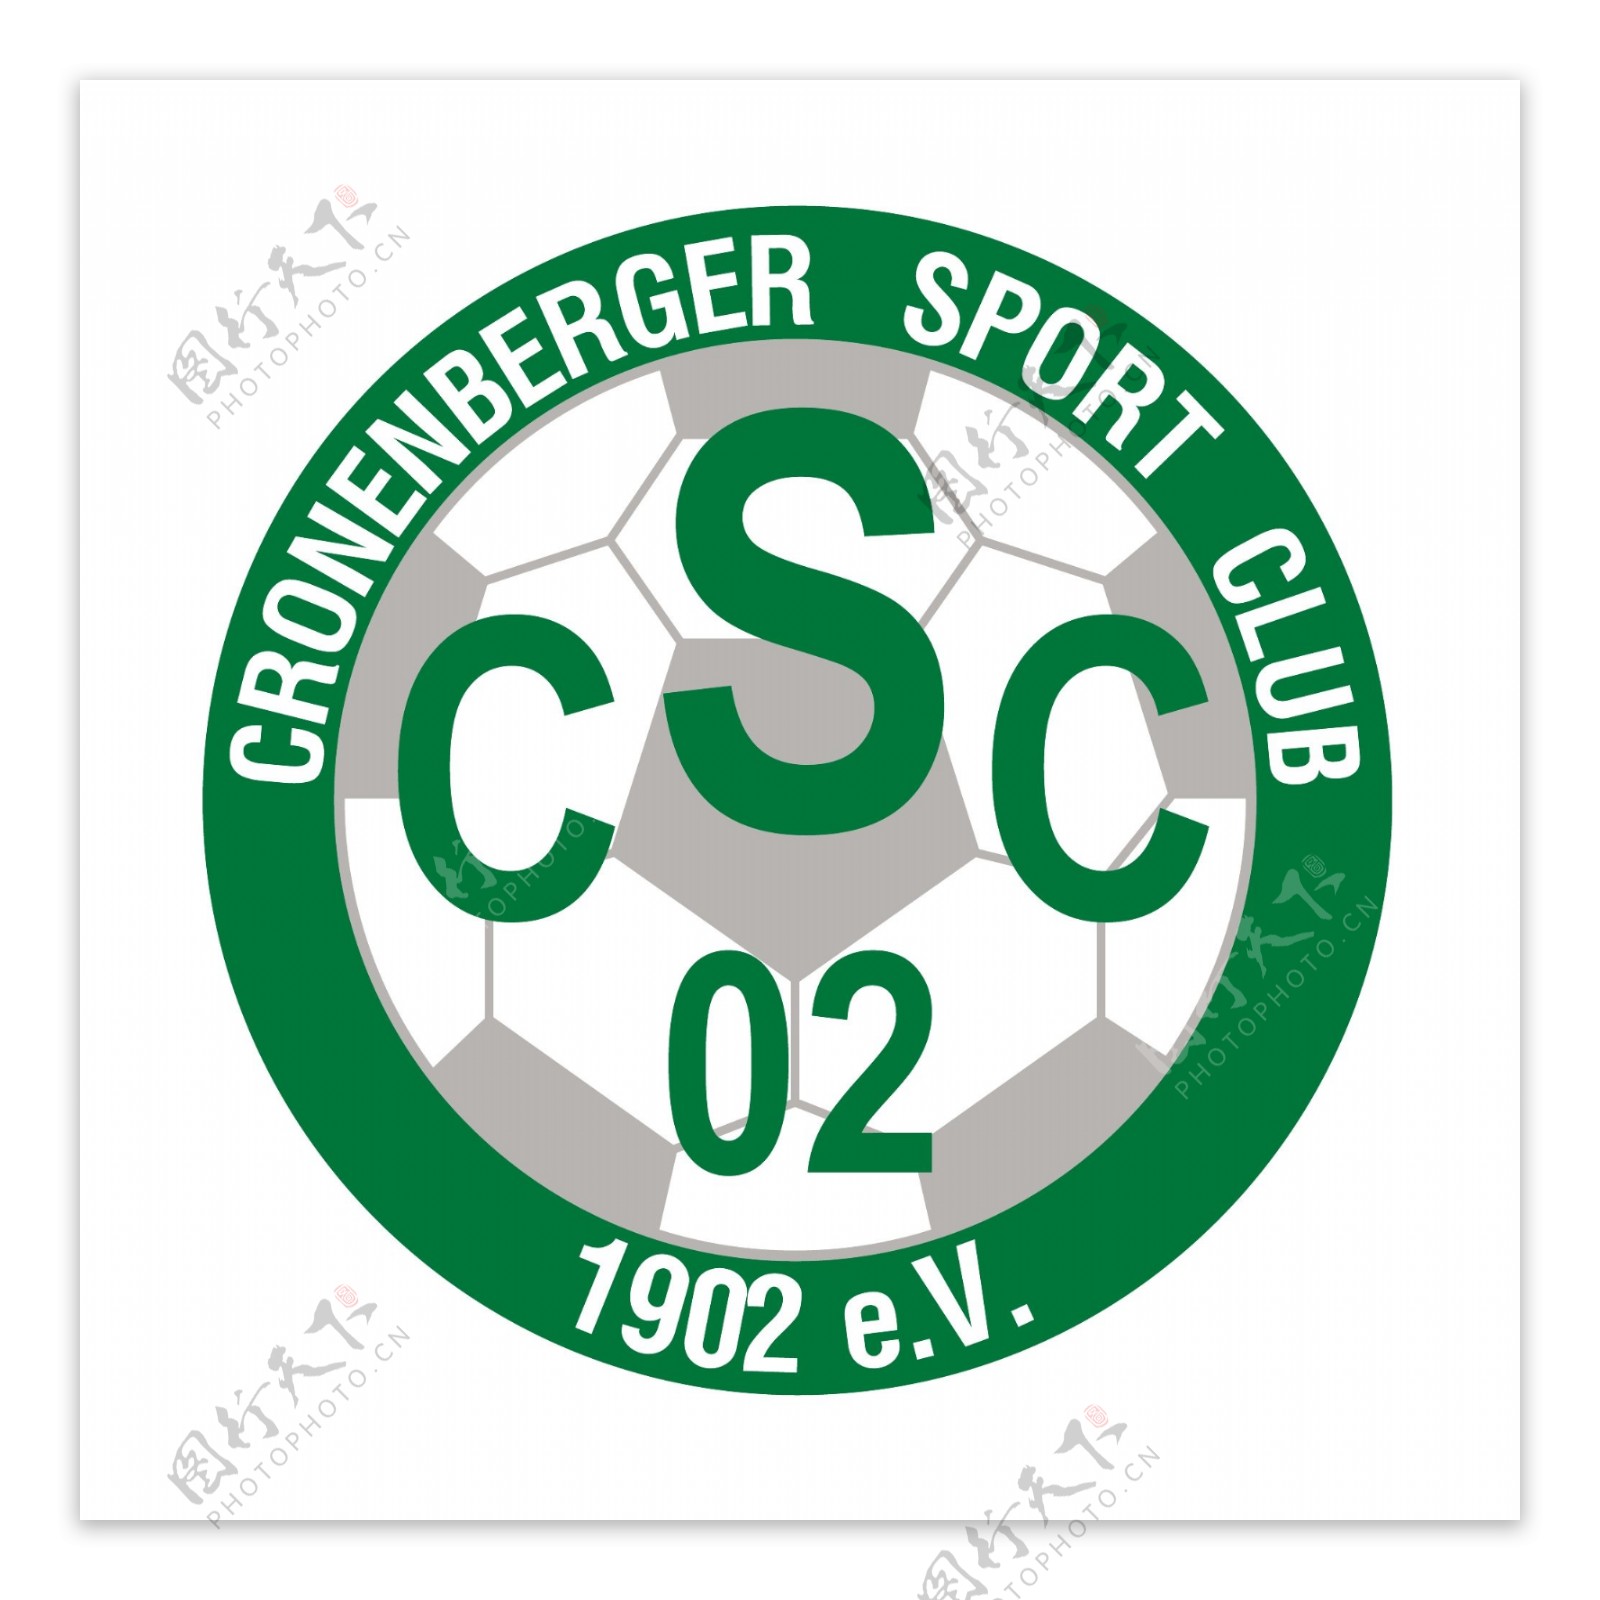 cronenberger体育俱乐部